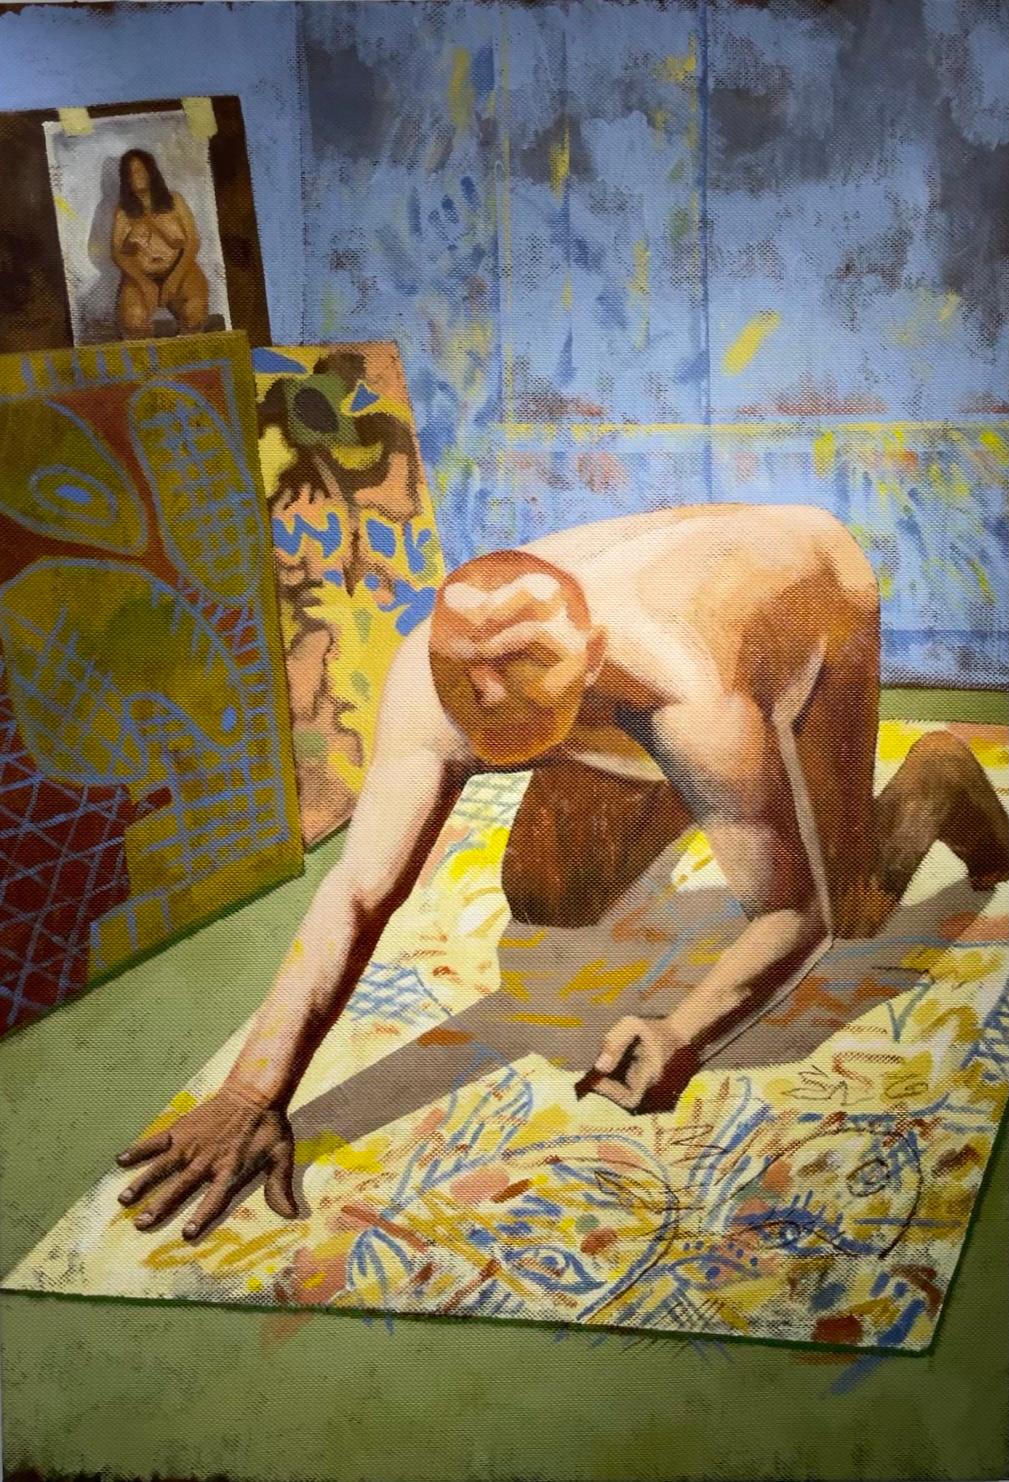 Alexandru Rădvan Nude Painting – Le chef d'oeuvre inconnu 2 - 21. Jahrhundert, männlich, gelb, blau, zeitgenössische Kunst